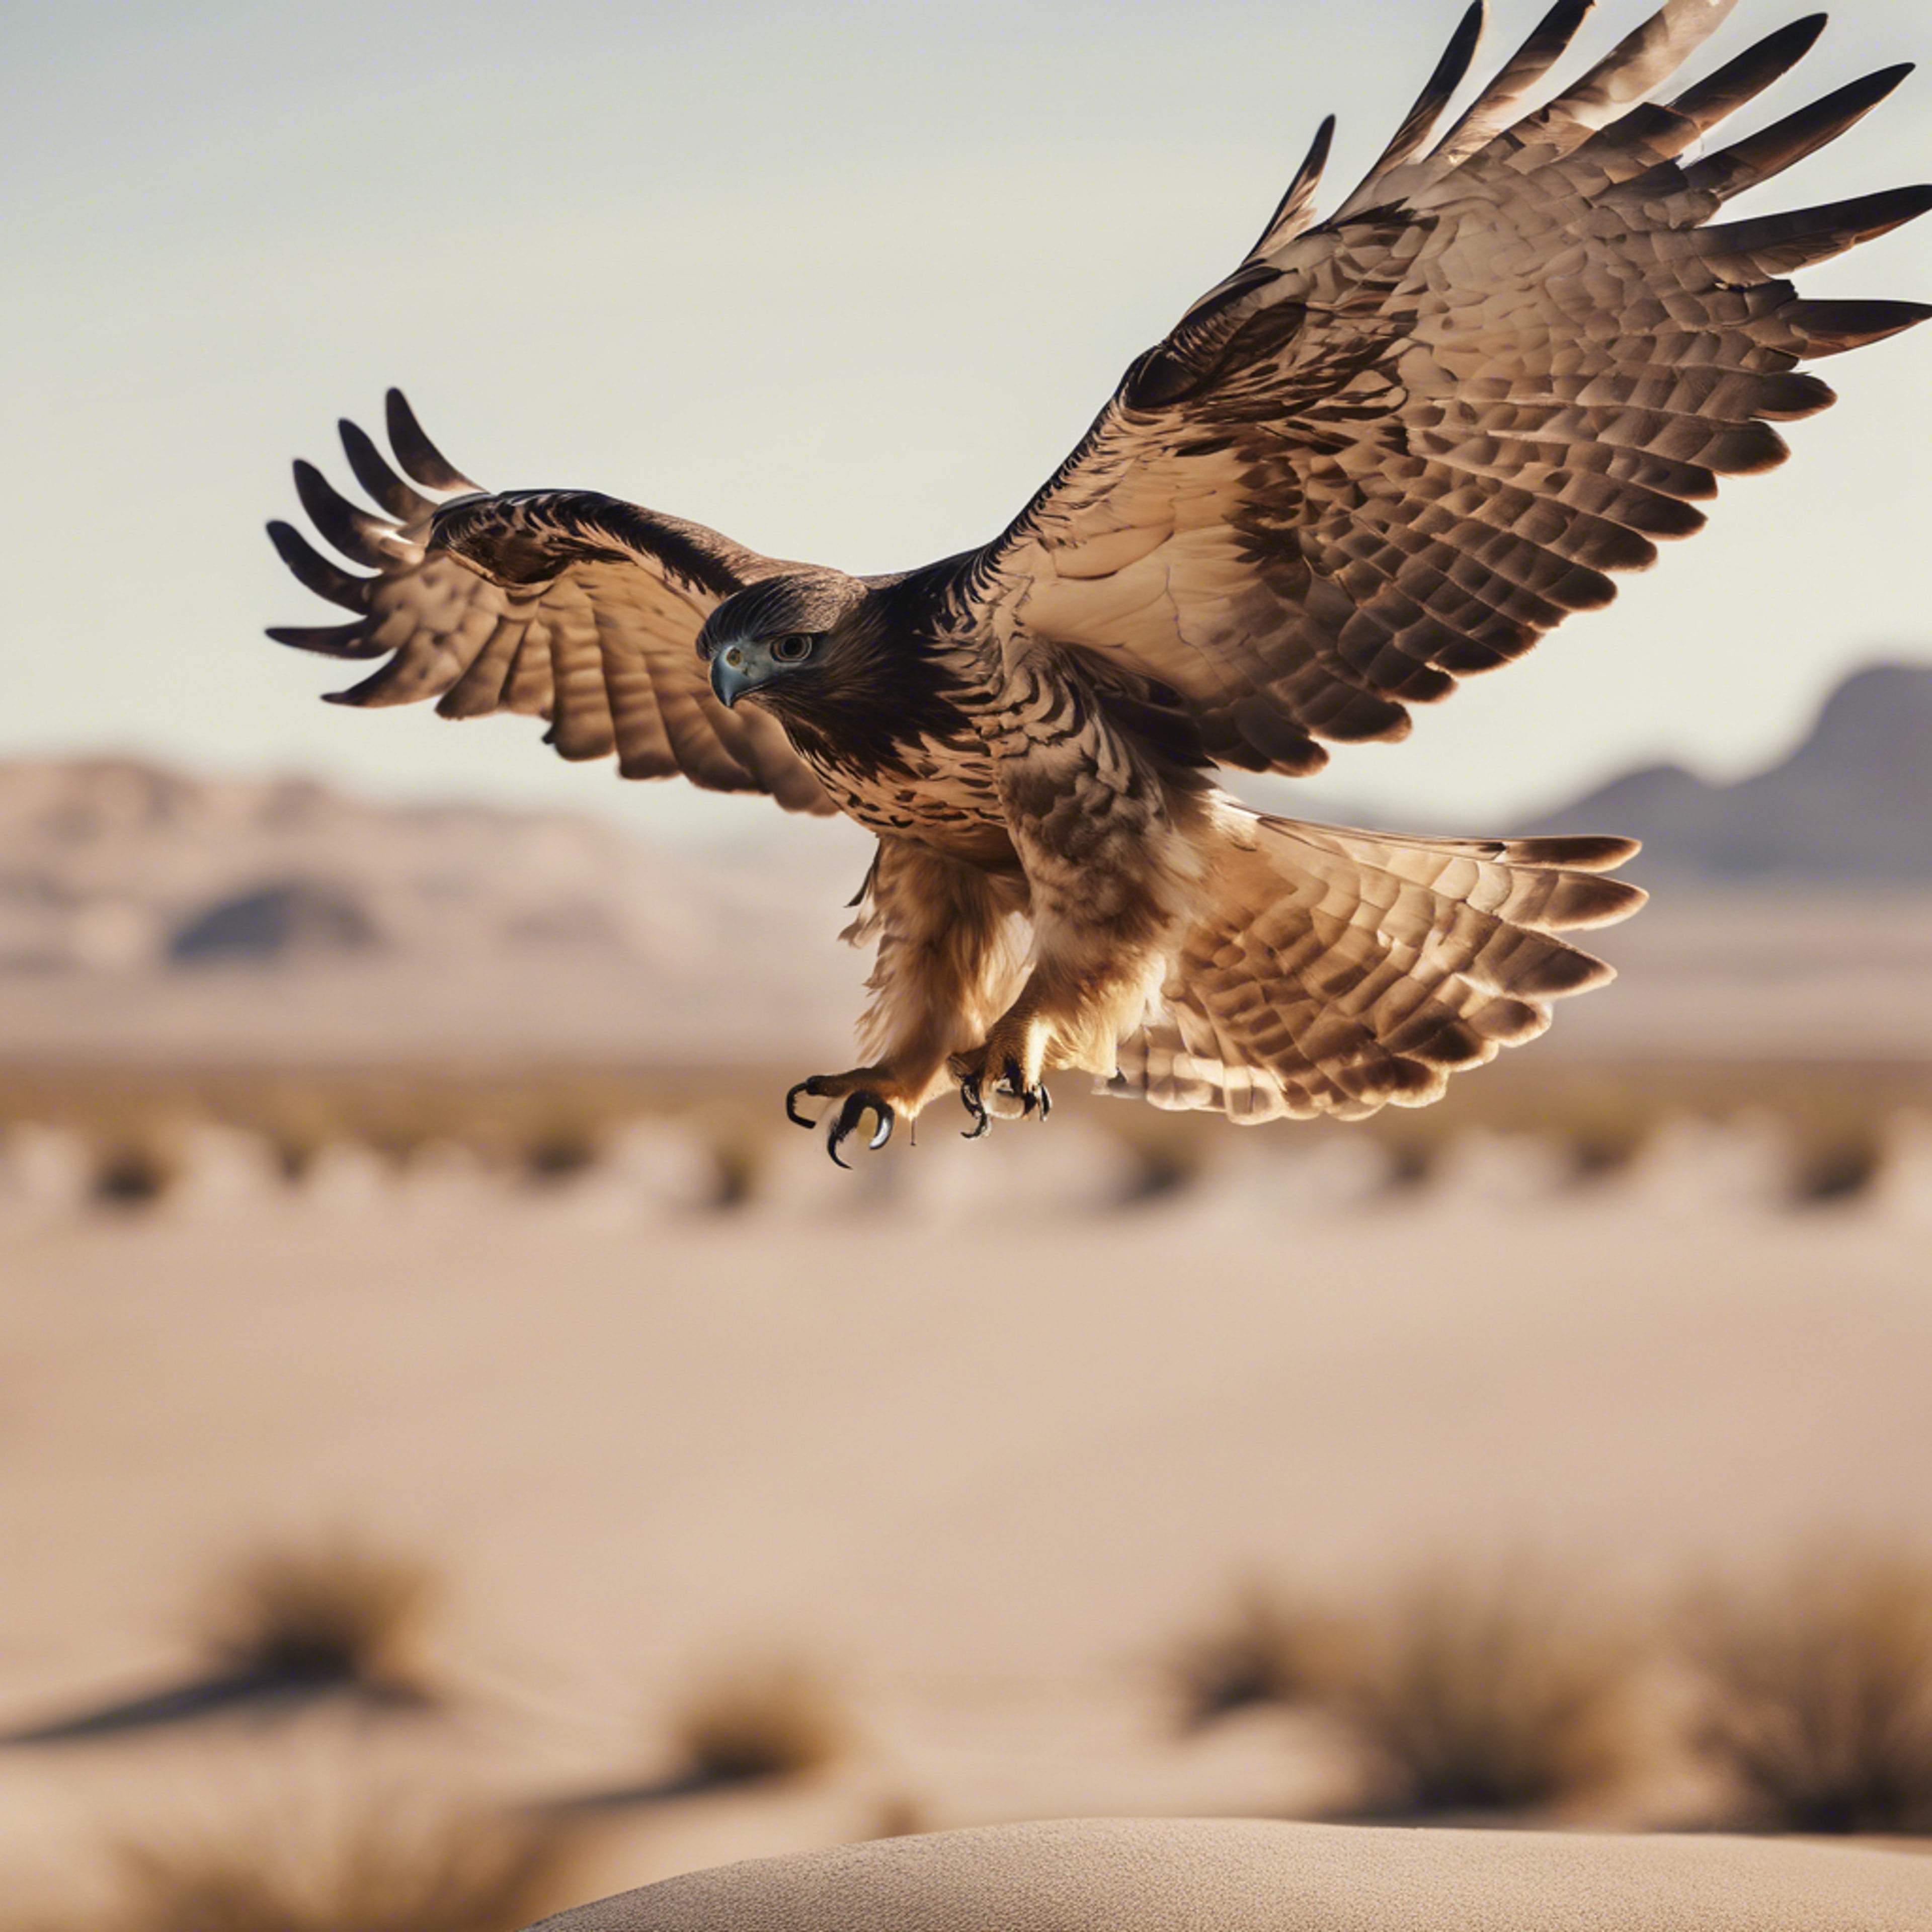 A hawk taking flight from its perch in a cool beige desert landscape. Wallpaper[f9770860966b45f09558]